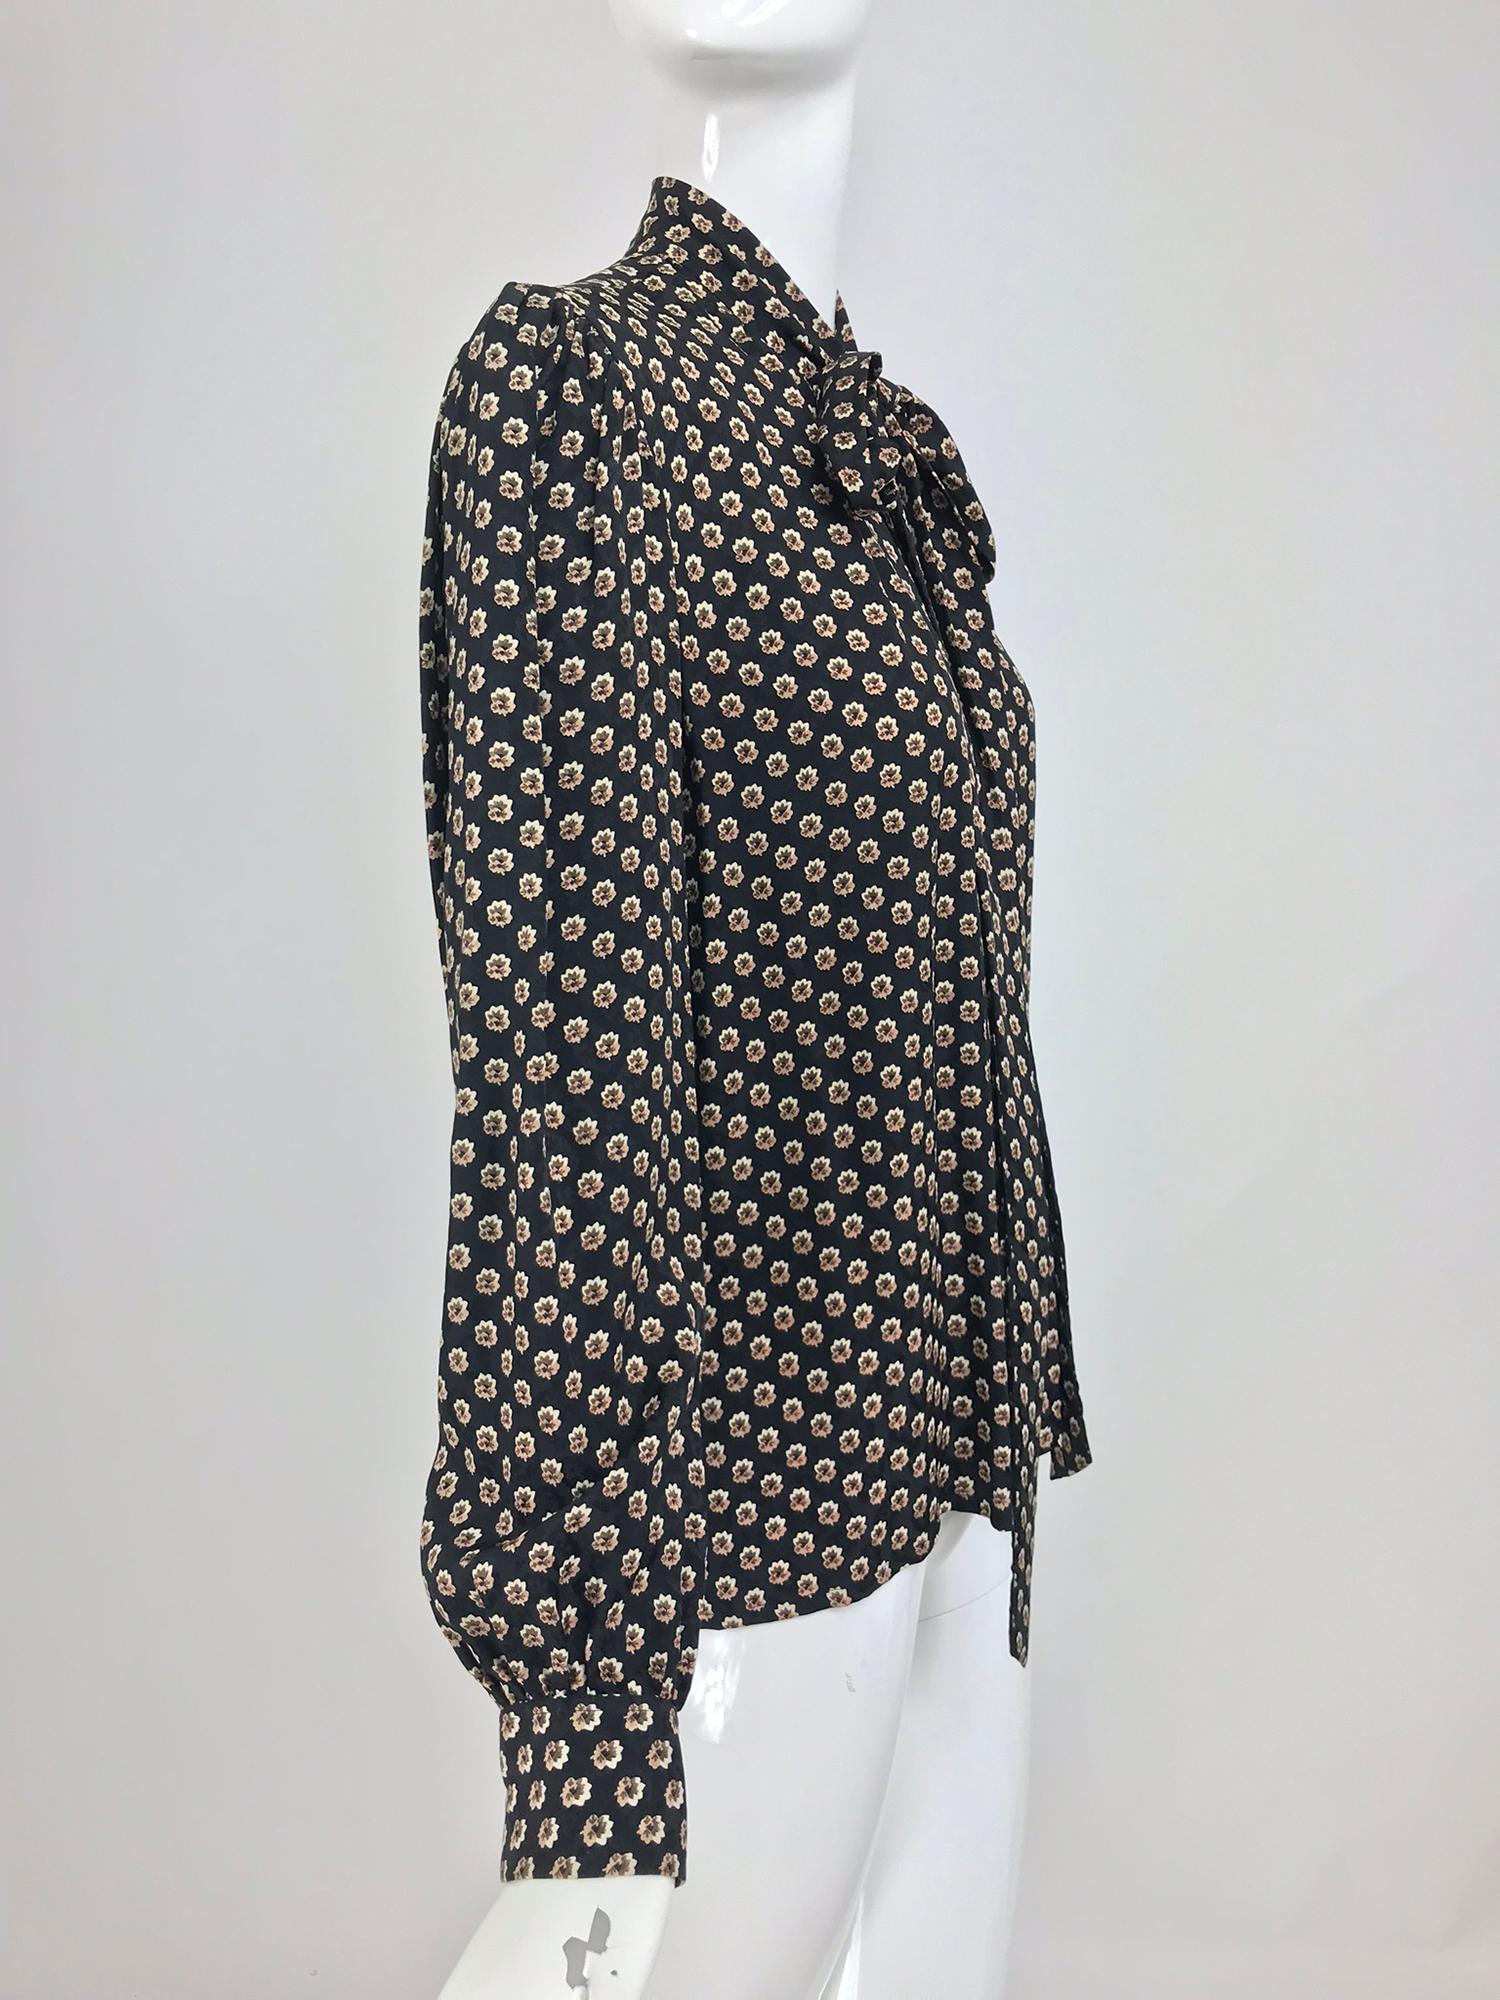 Yves Saint Laurent Provincial Print Silk Bow Neck Blouse 1970s 1